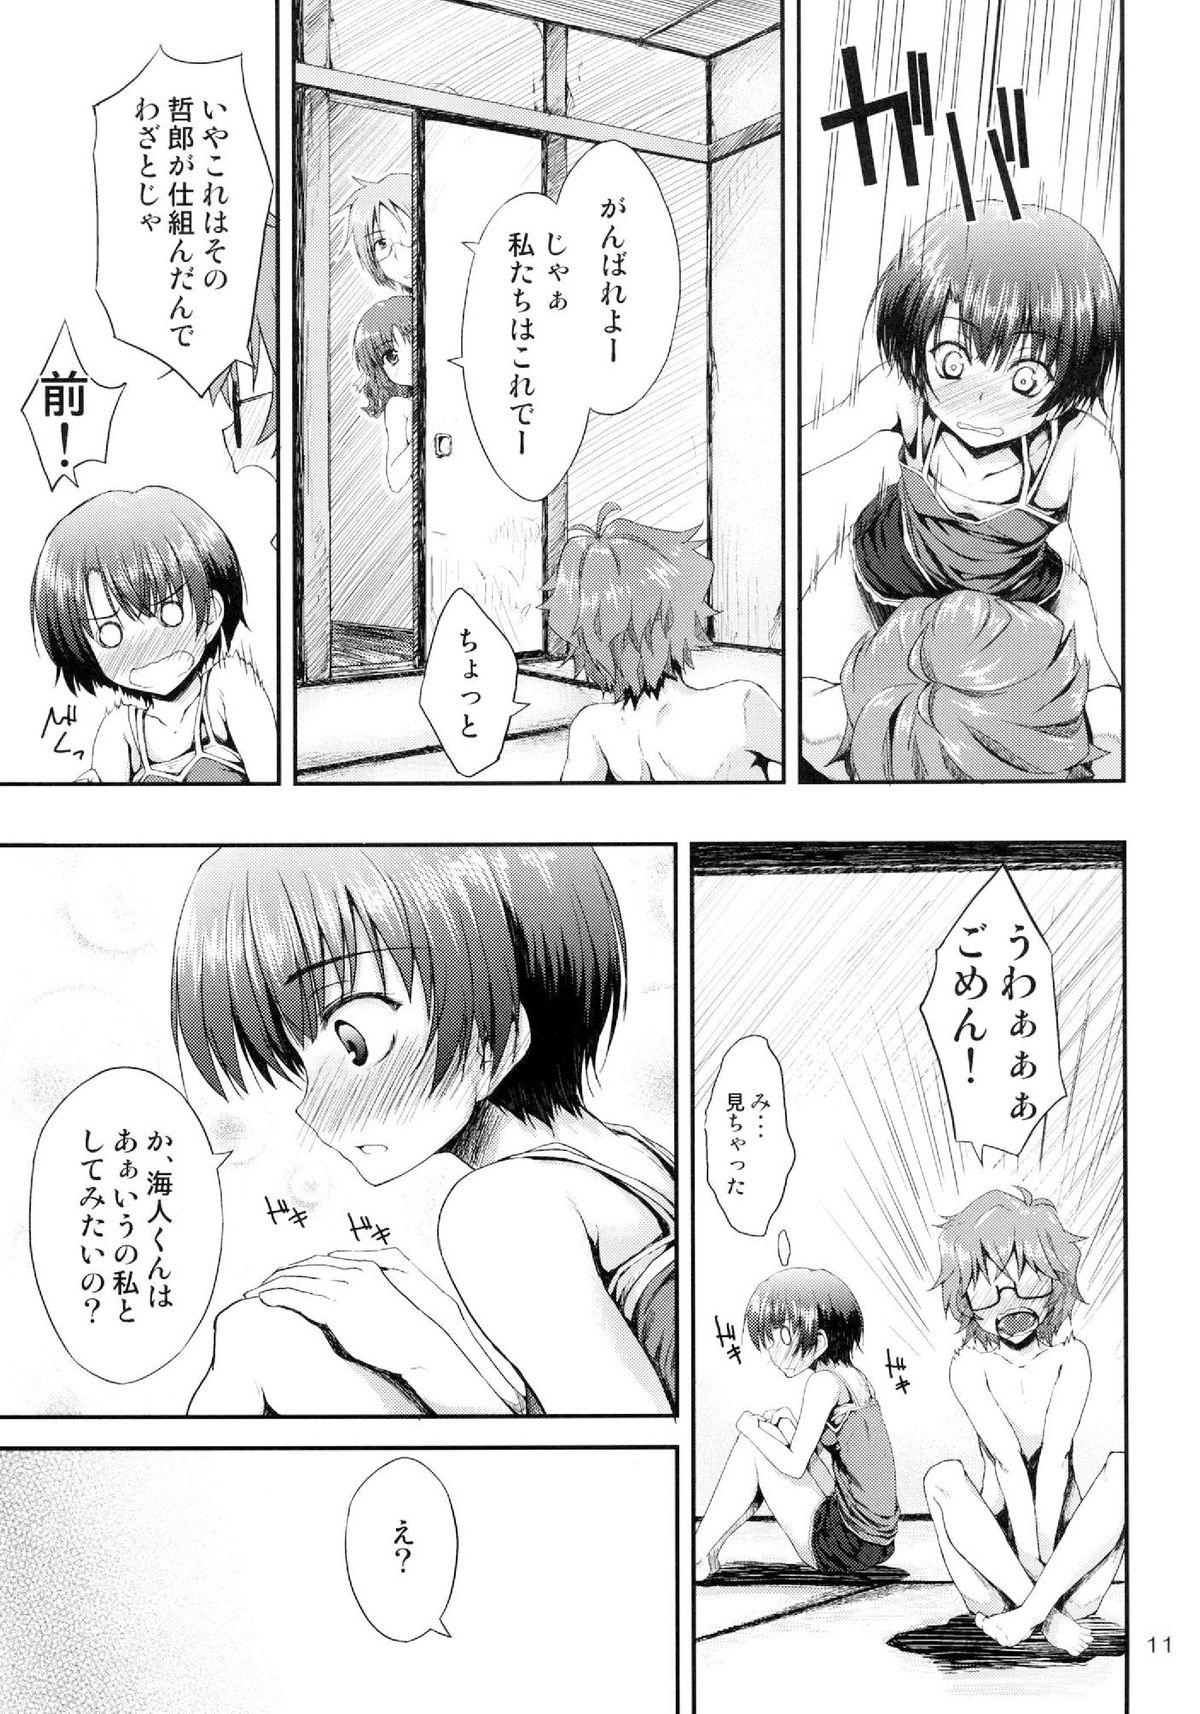 Cojiendo Ano Natsu wo Mou Ichido - Ano natsu de matteru Ass To Mouth - Page 11